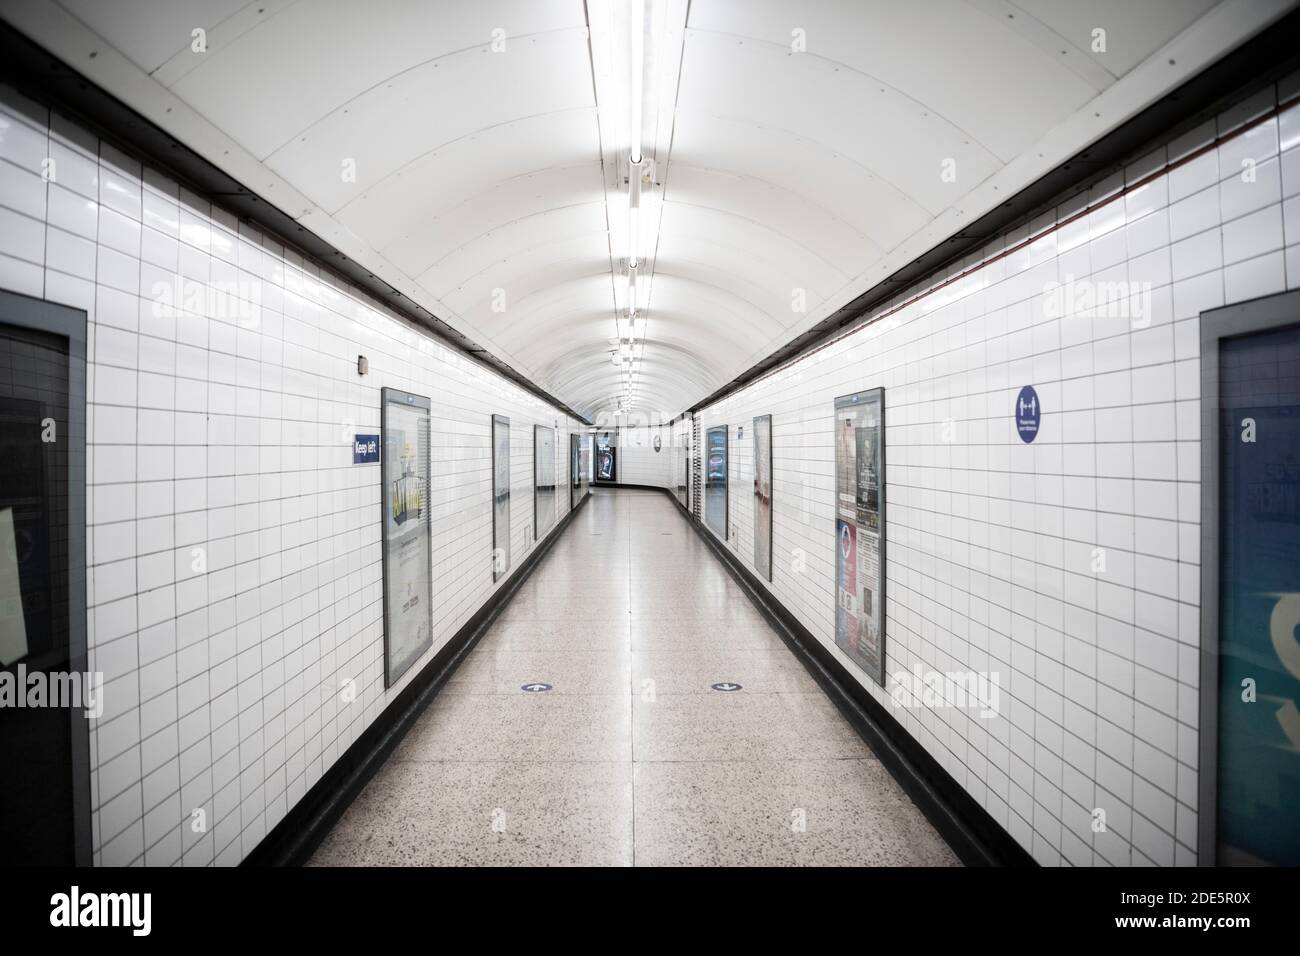 Ruhige, leere und verlassene Londoner U-Bahn-Station in Coronavirus Covid-19 Pandemiesperre, während öffentliche Verkehrsmittel und Züge wurden reduziert ohne Menschen während Reiseverbot Stockfoto